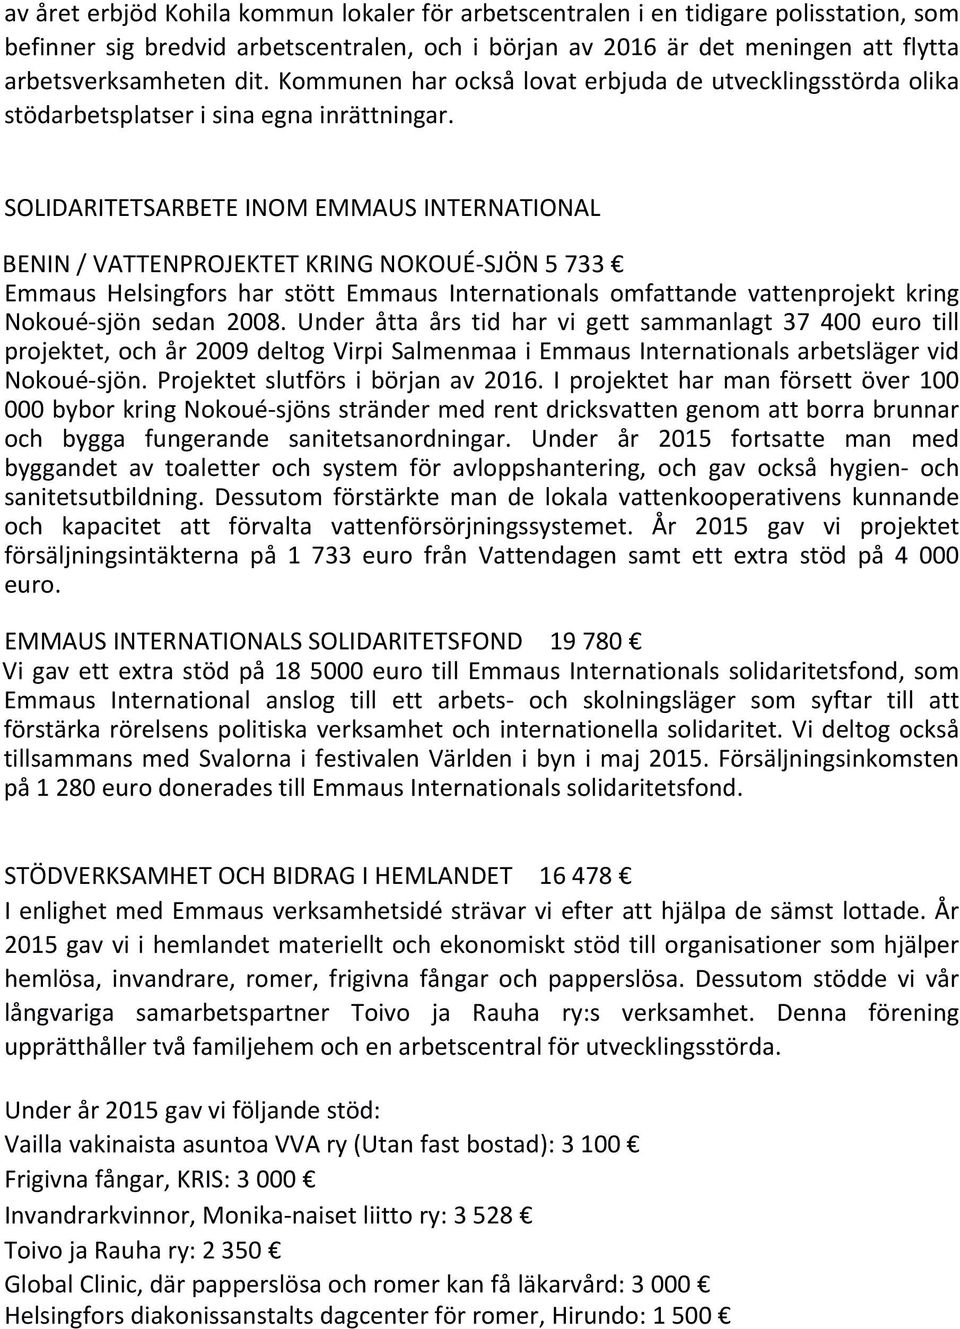 SOLIDARITETSARBETE INOM EMMAUS INTERNATIONAL BENIN / VATTENPROJEKTET KRING NOKOUÉ-SJÖN 5 733 Emmaus Helsingfors har stött Emmaus Internationals omfattande vattenprojekt kring Nokoué-sjön sedan 2008.